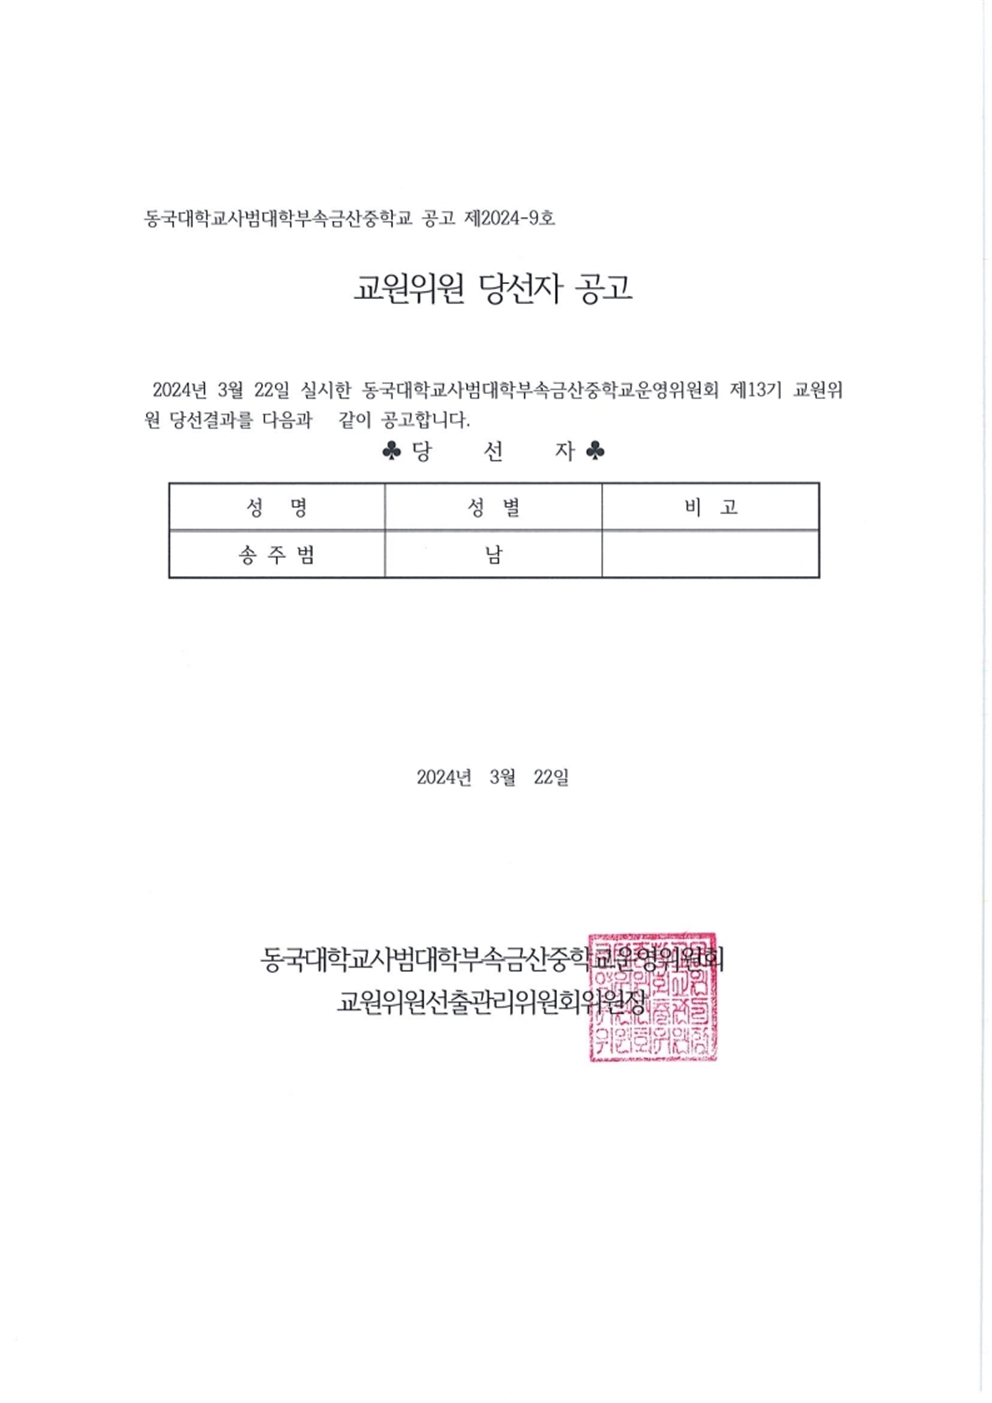 페이지 원본 제13기 금산중학교운영위원회교원위원 당선자 확정 및 통지001